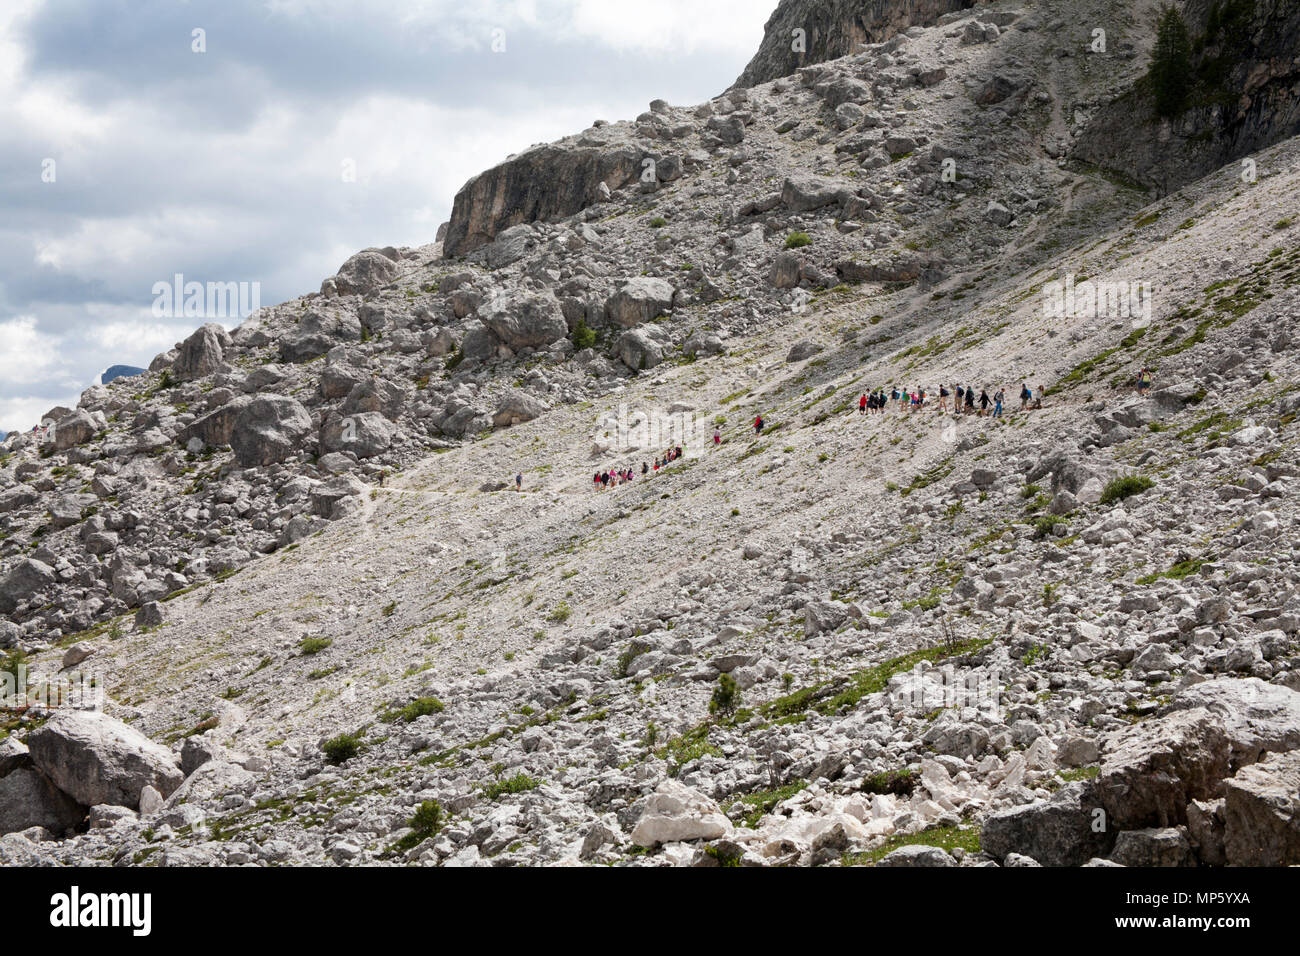 Un gruppo di trekking che attraversa un percorso roccioso il sentiero 526A sotto le scogliere del Sassolungo al Piz Sella al di sopra di Selva di Val Gardena Dolomiti Italia Foto Stock